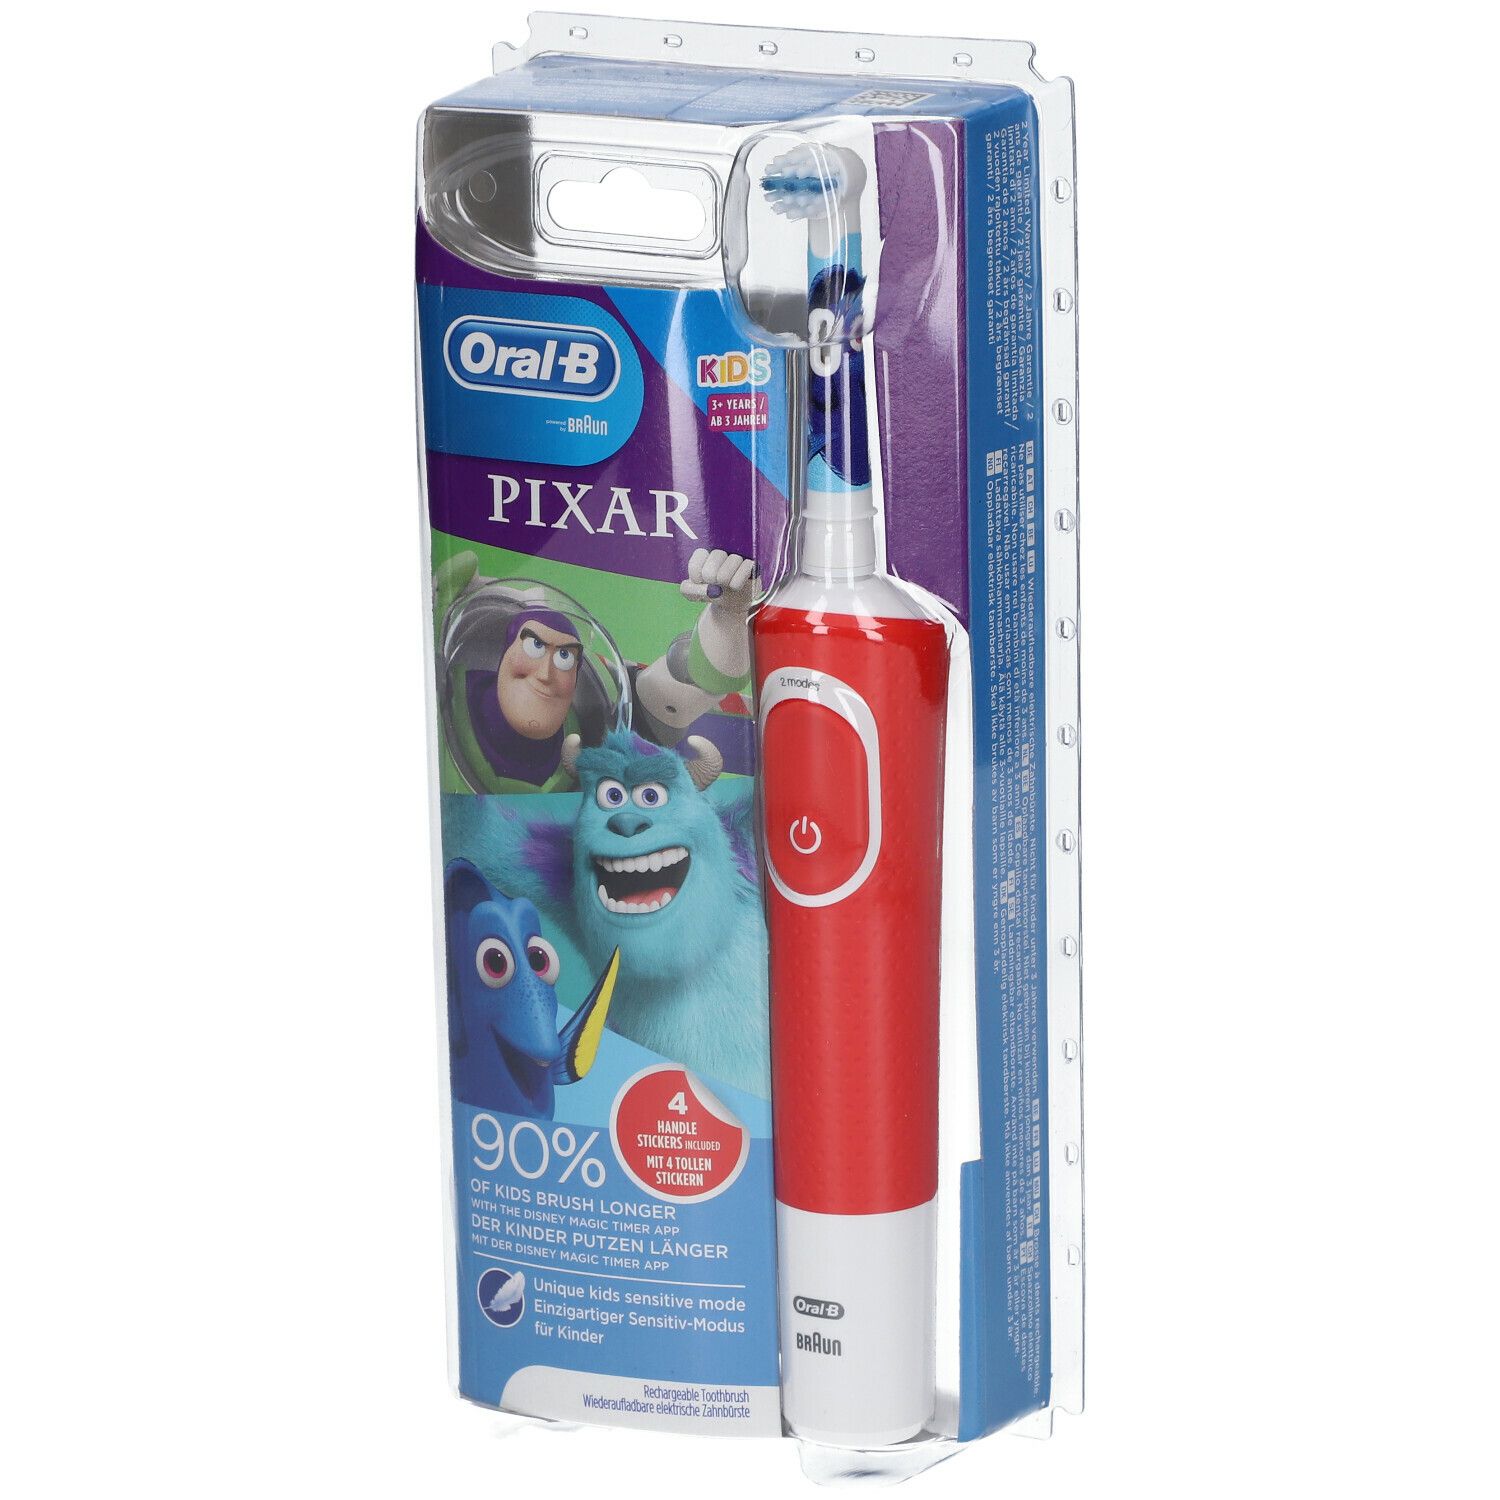 P&G HEALTH FRANCE Oral-B Kids Pixar Elektrische Zahnbürste